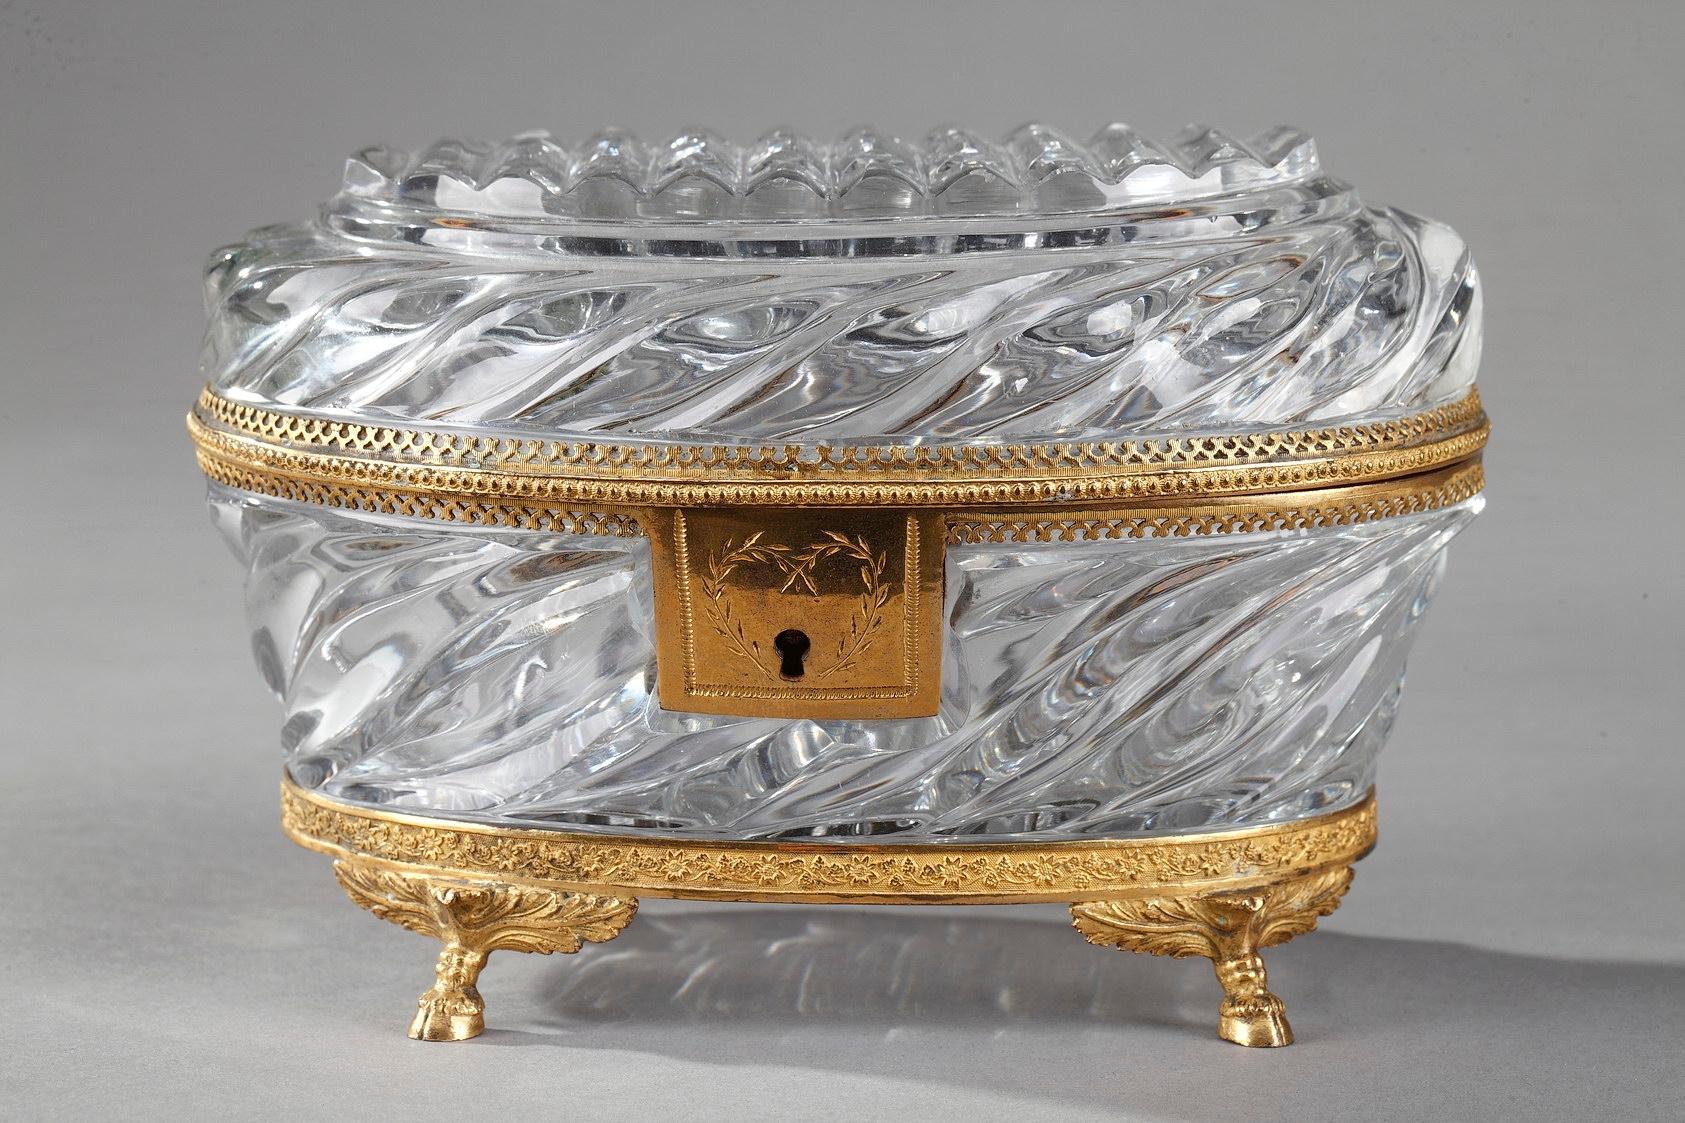 Exquisite antike Schmuckschatulle mit geschliffenem Kristall in Ovalform. Das Kristall ist in verschlungenen Mustern ziseliert, und die Fassungen sind aus vergoldeter Bronze, die mit kleinen Blumen, Perlen und durchbrochenem Geflecht verziert ist.